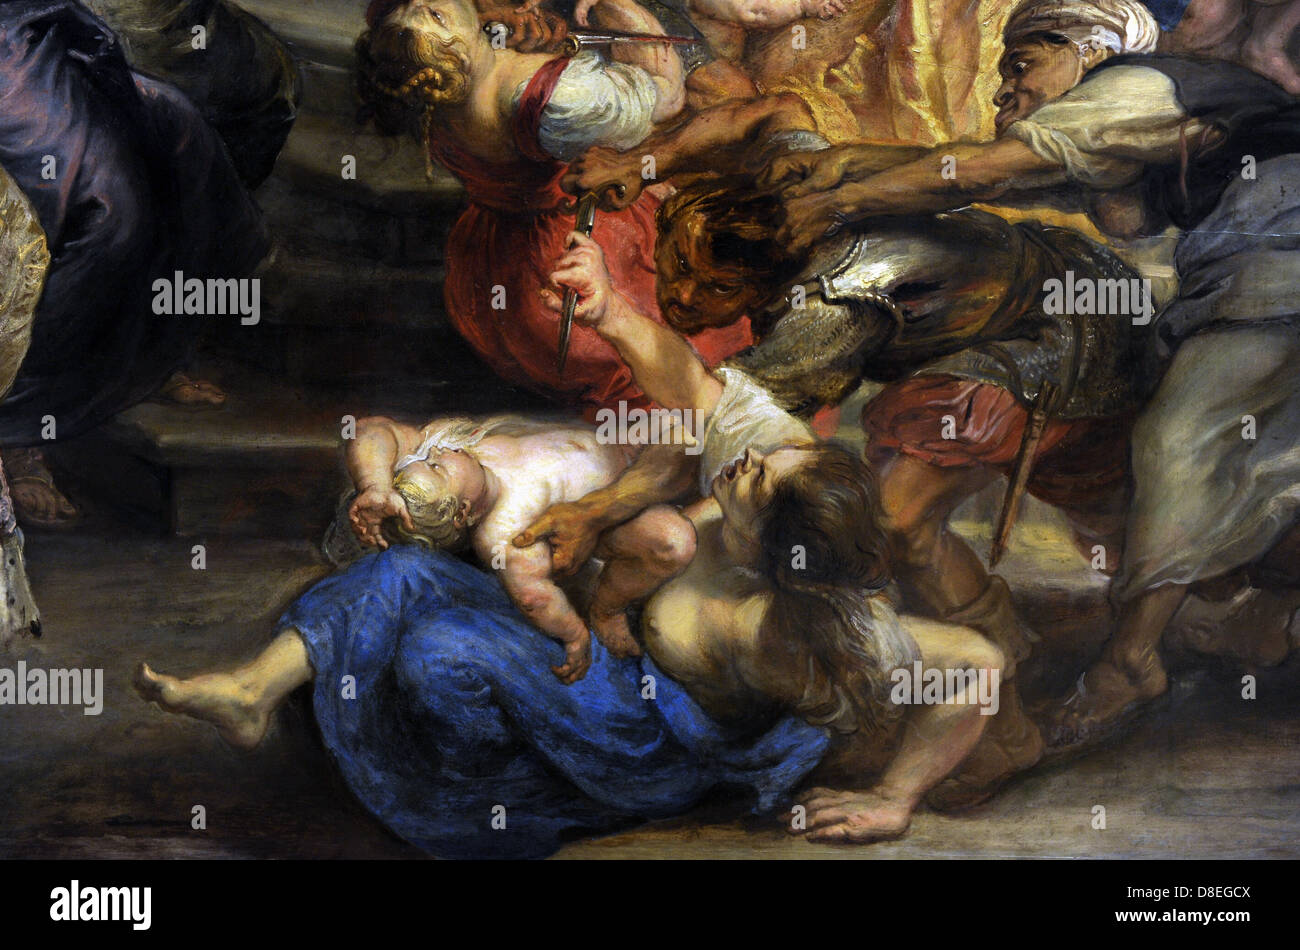 Peter Paul Rubens (1577-1640). L'allemand peintre baroque flamand. Massacre des Innocents, 1635-40. Détail. Banque D'Images